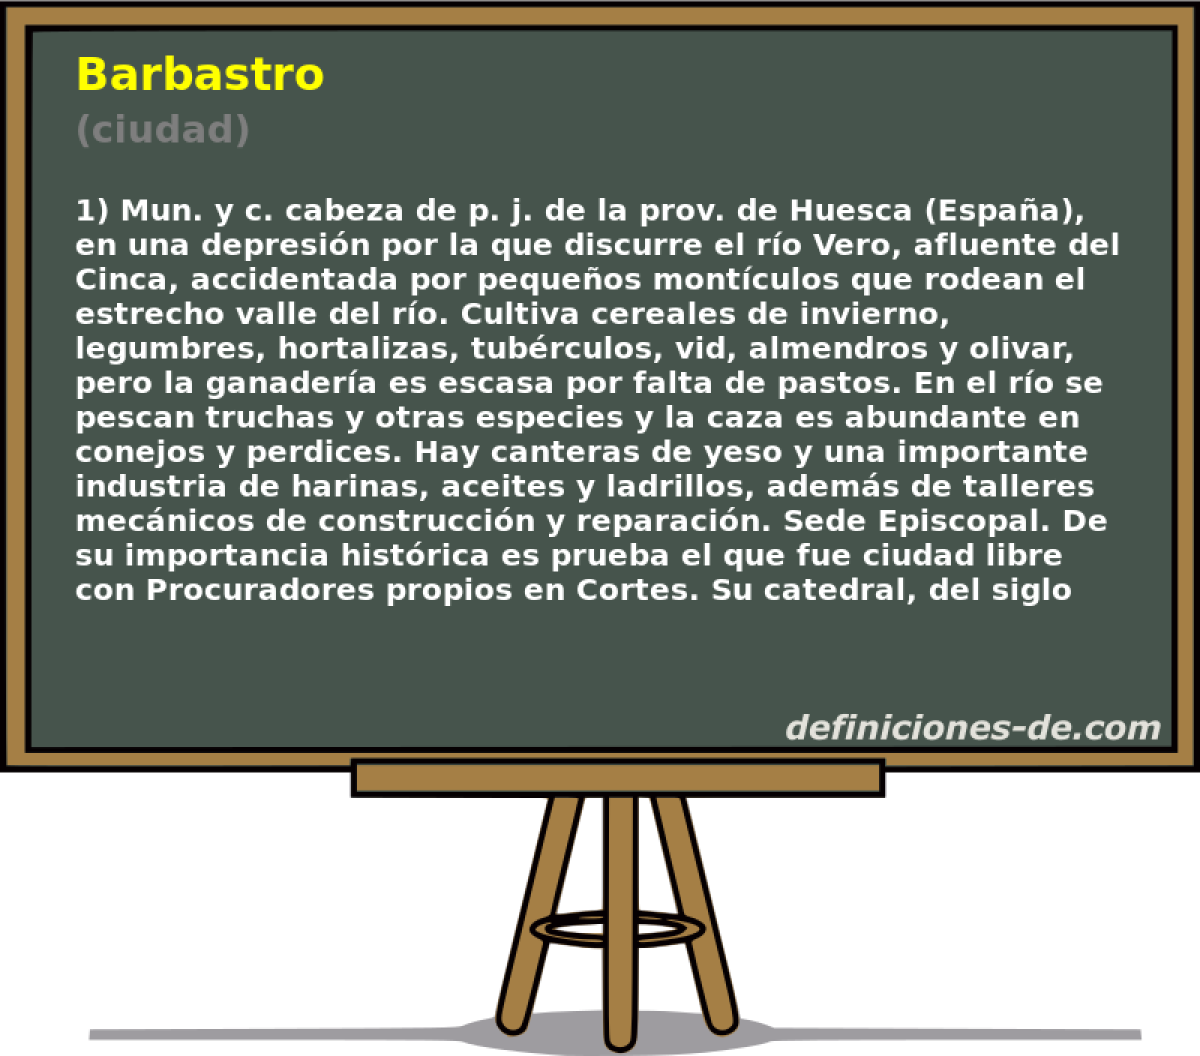 Barbastro (ciudad)